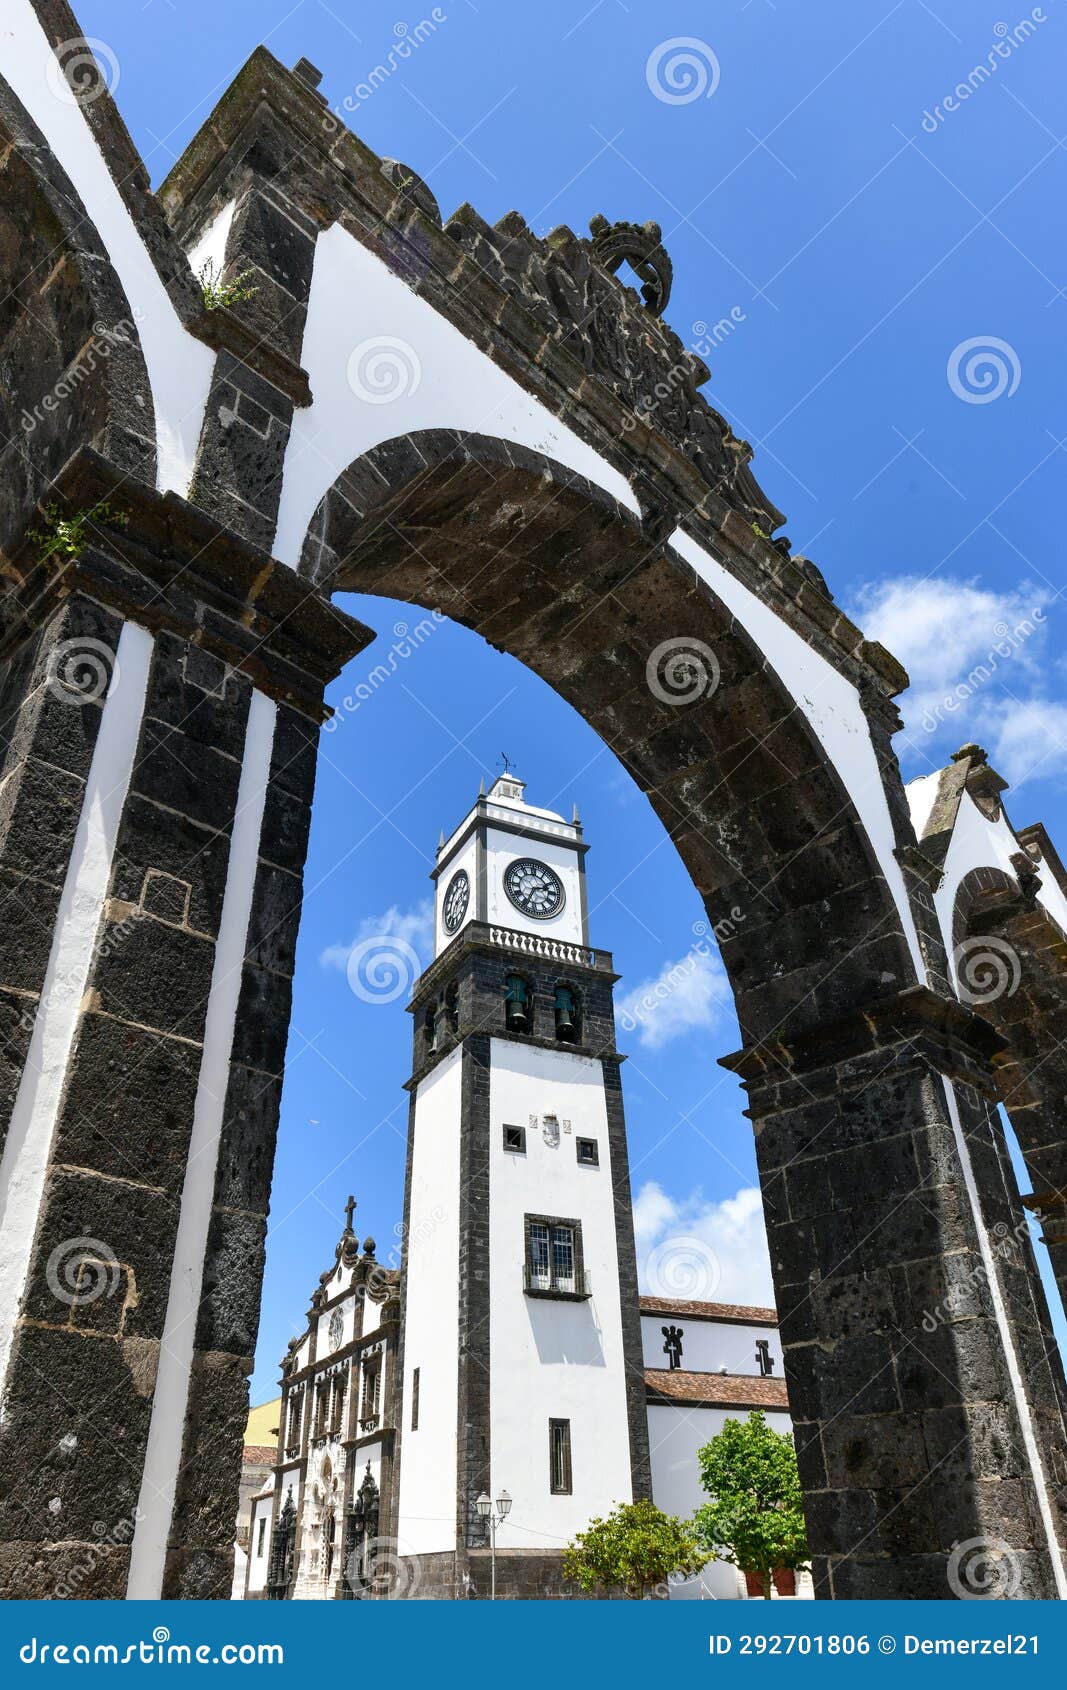 portas da cidade - portugal